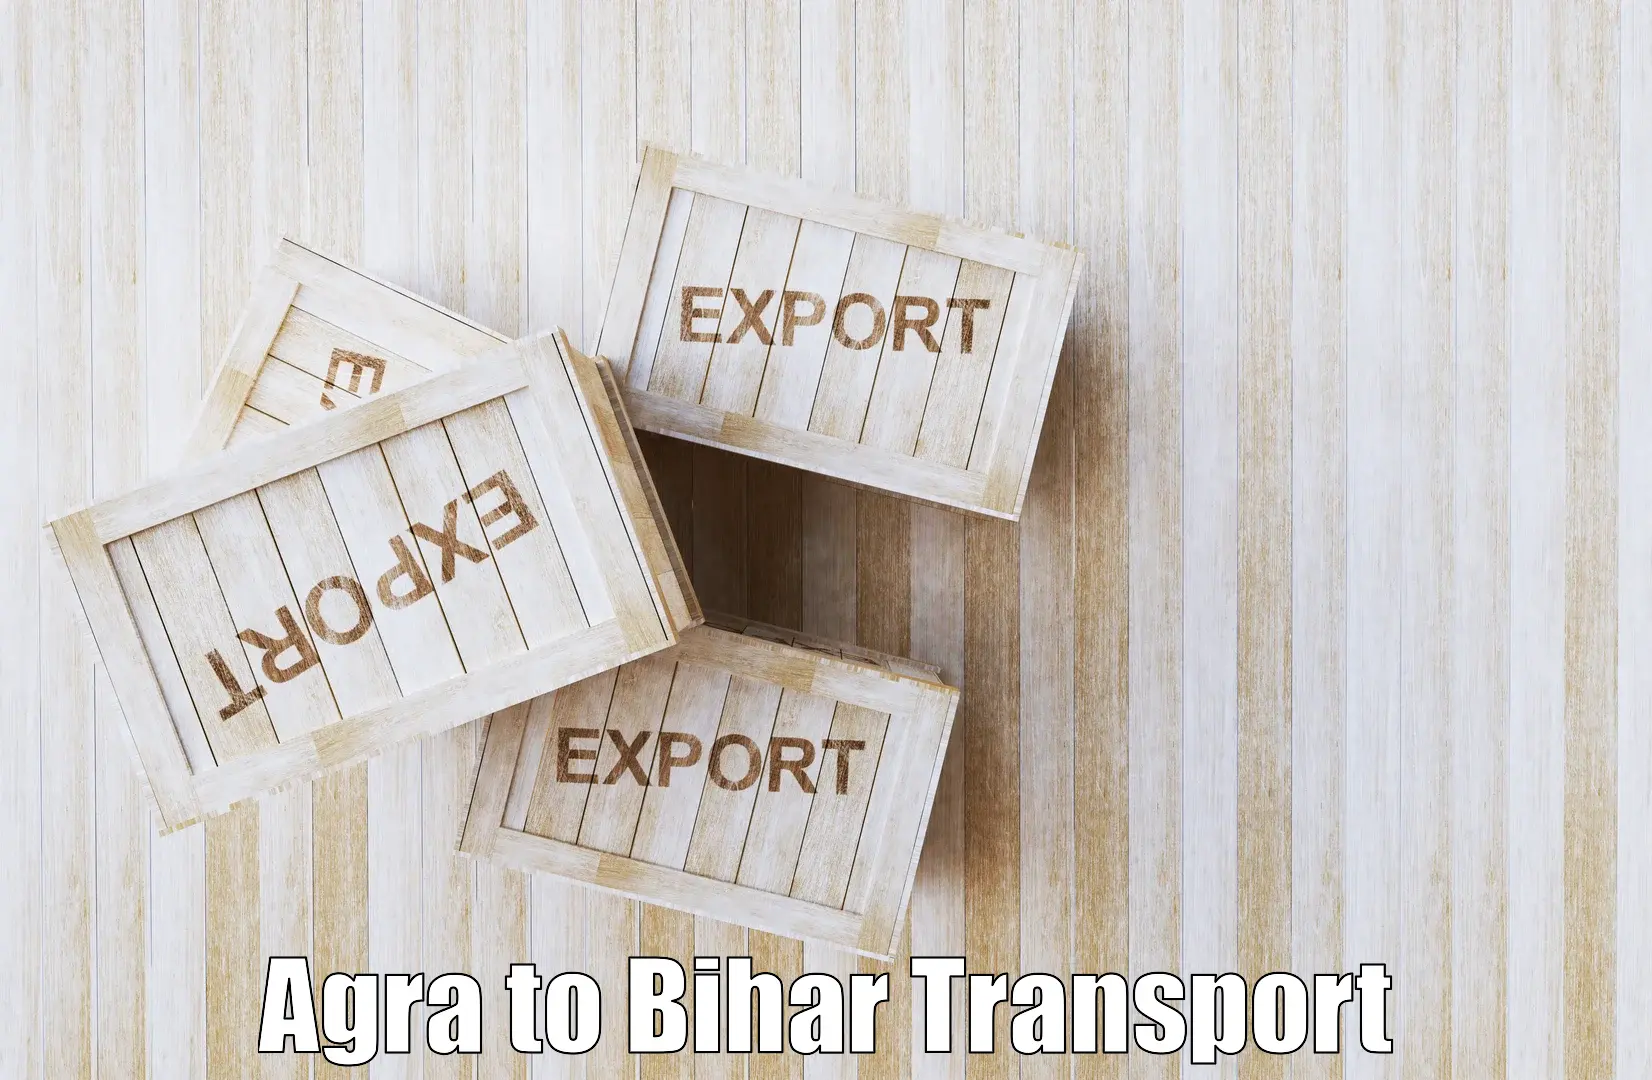 Two wheeler transport services Agra to Khodaganj